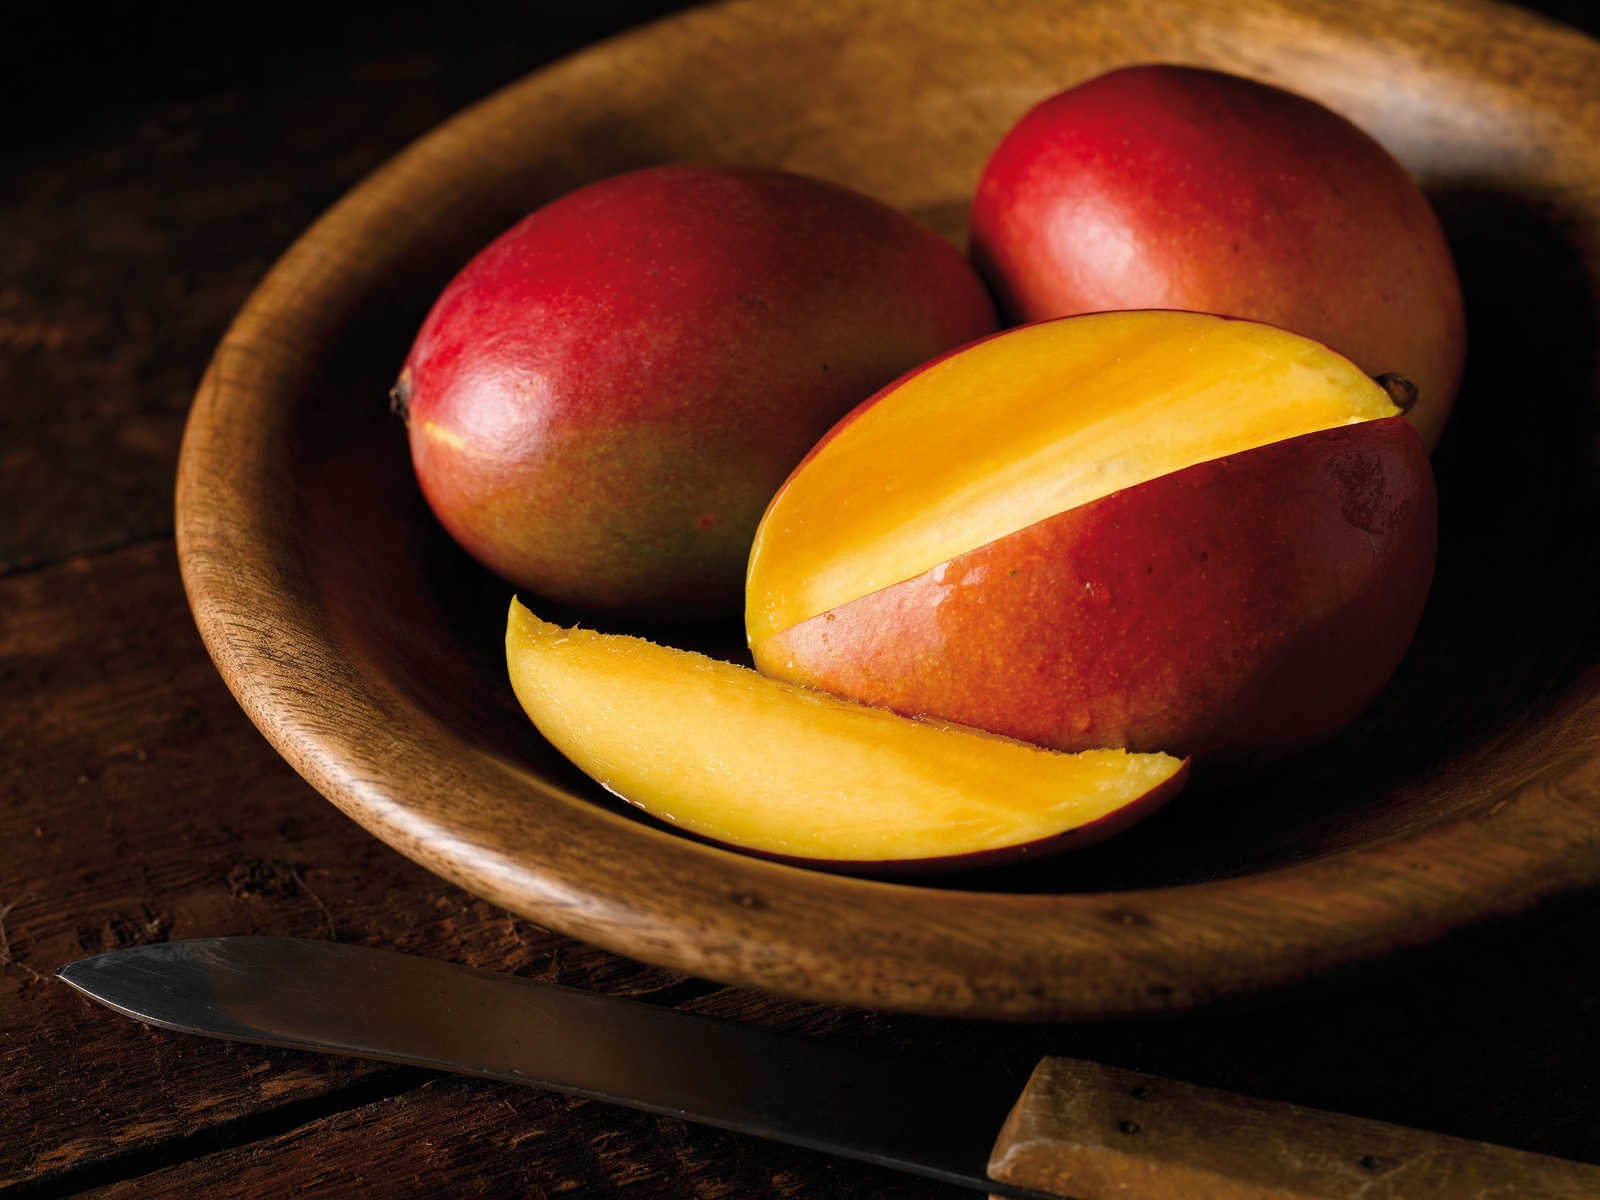             Mango Papaya Geurkaars met Fruitige Geur - 380g
        